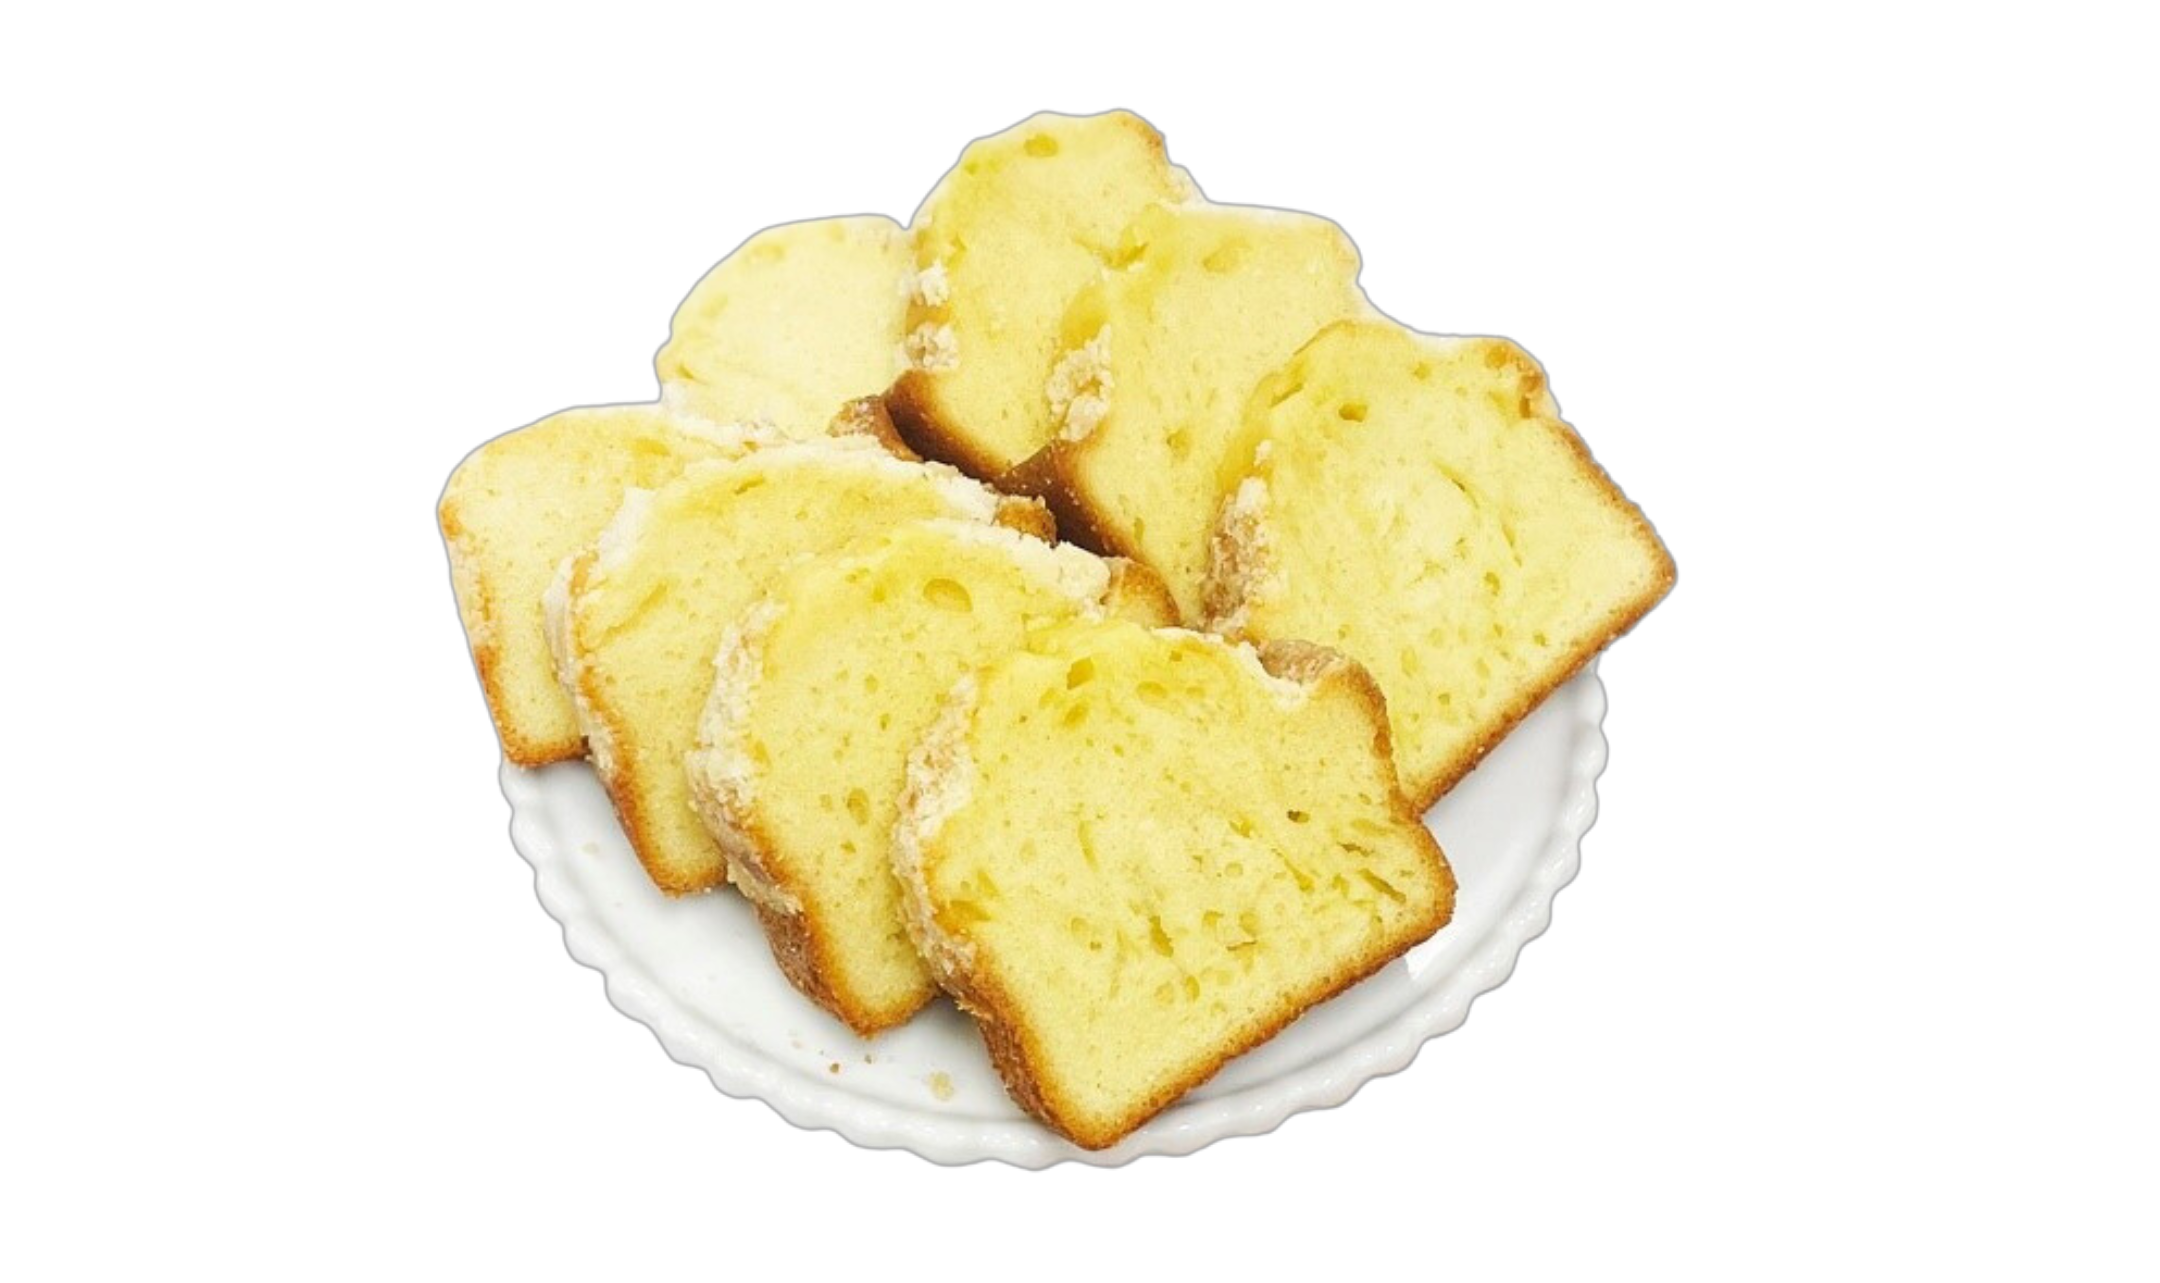 Plate of slices of lemon loaf cake